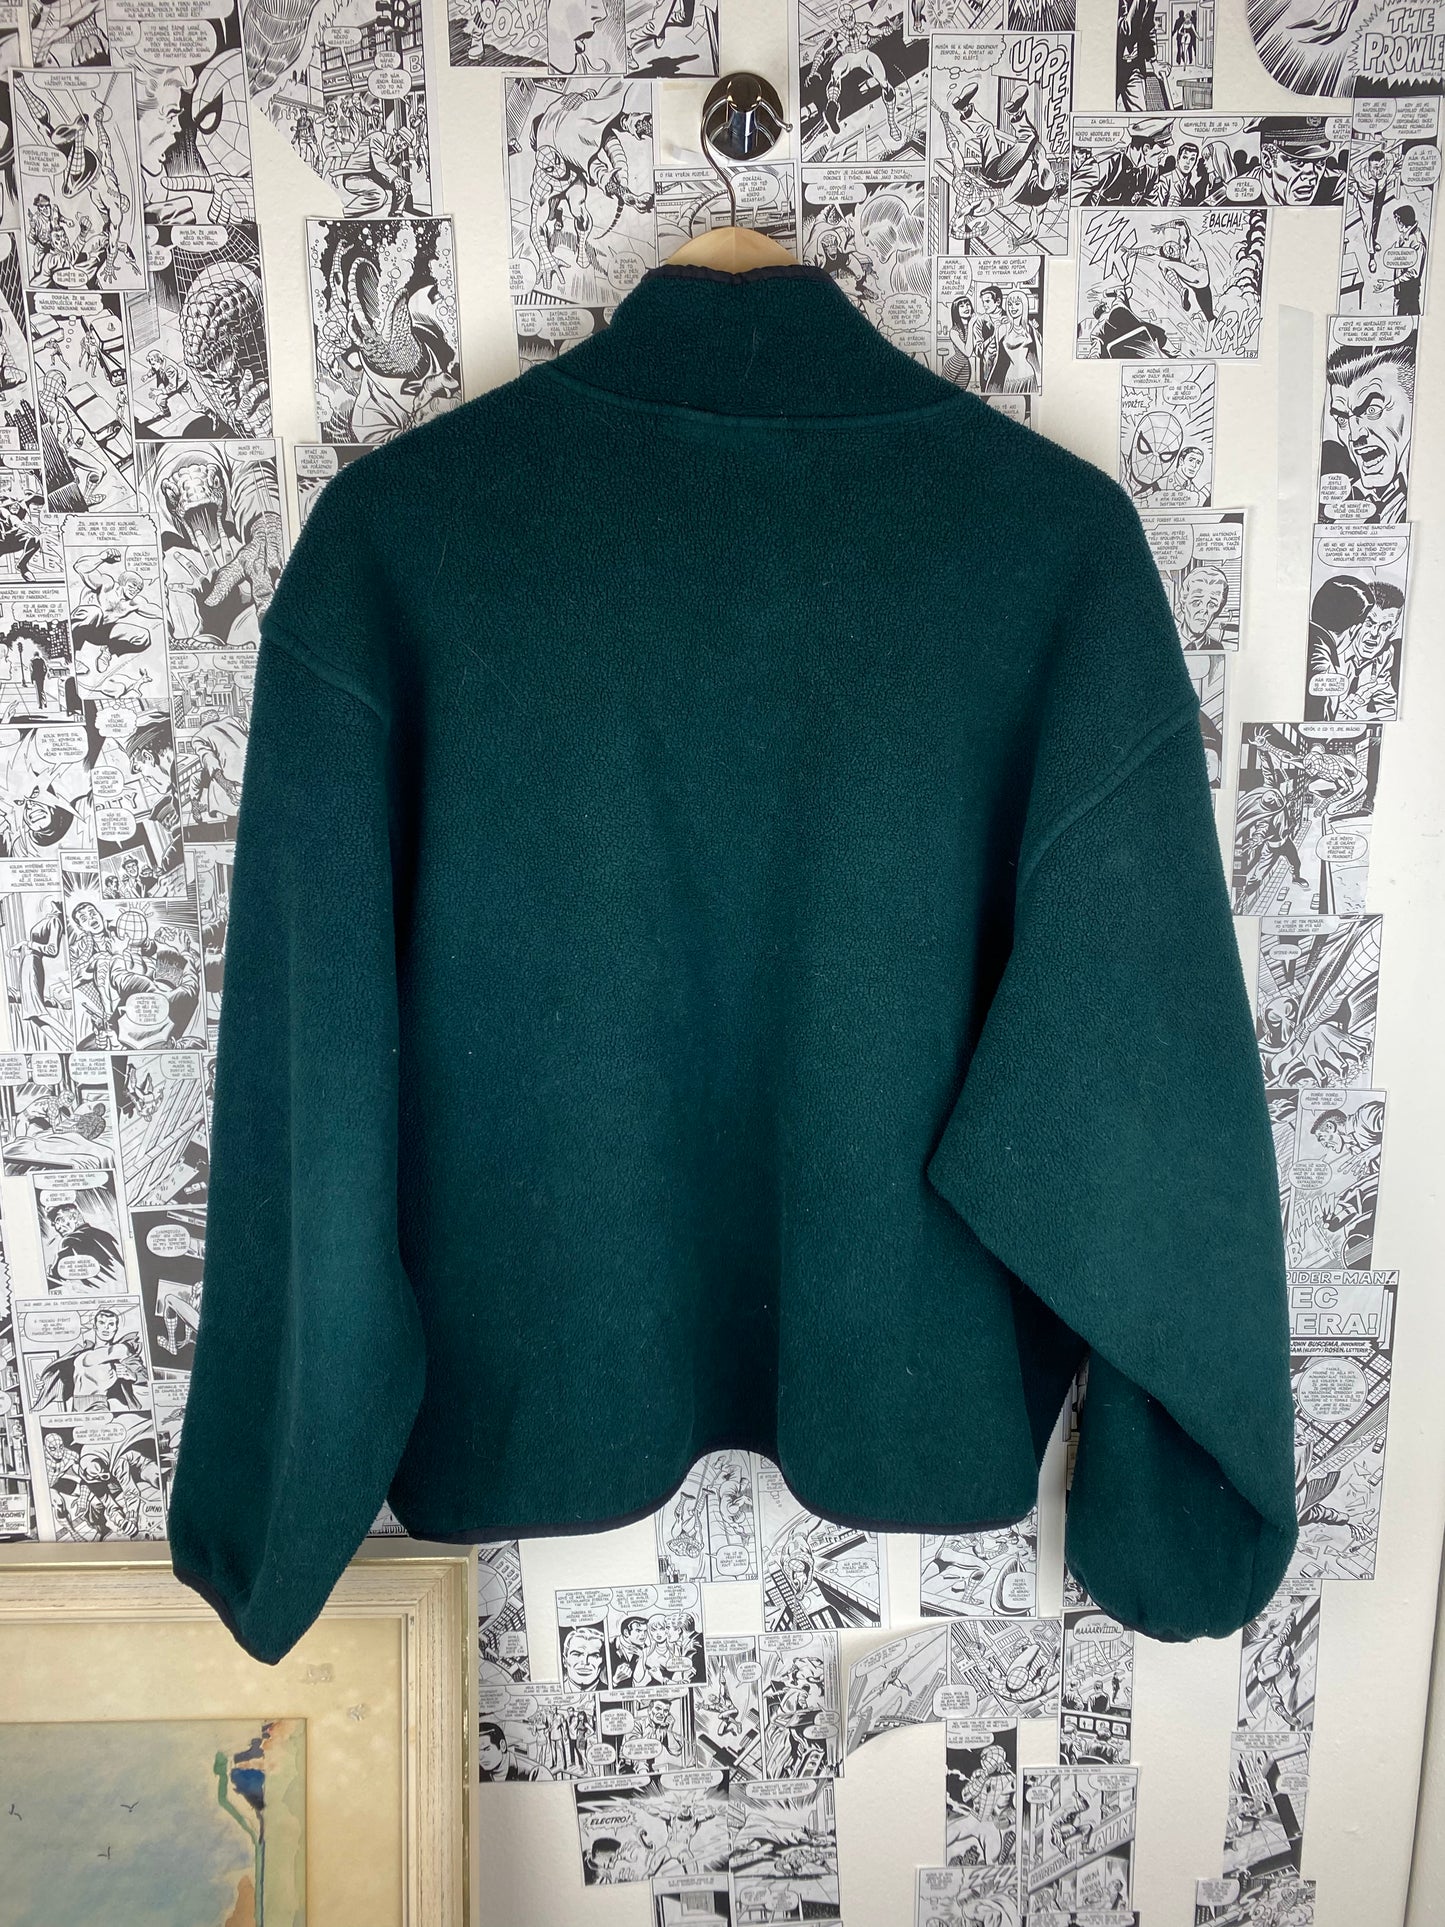 Vintage Woolrich Fleece Crewneck - size XL